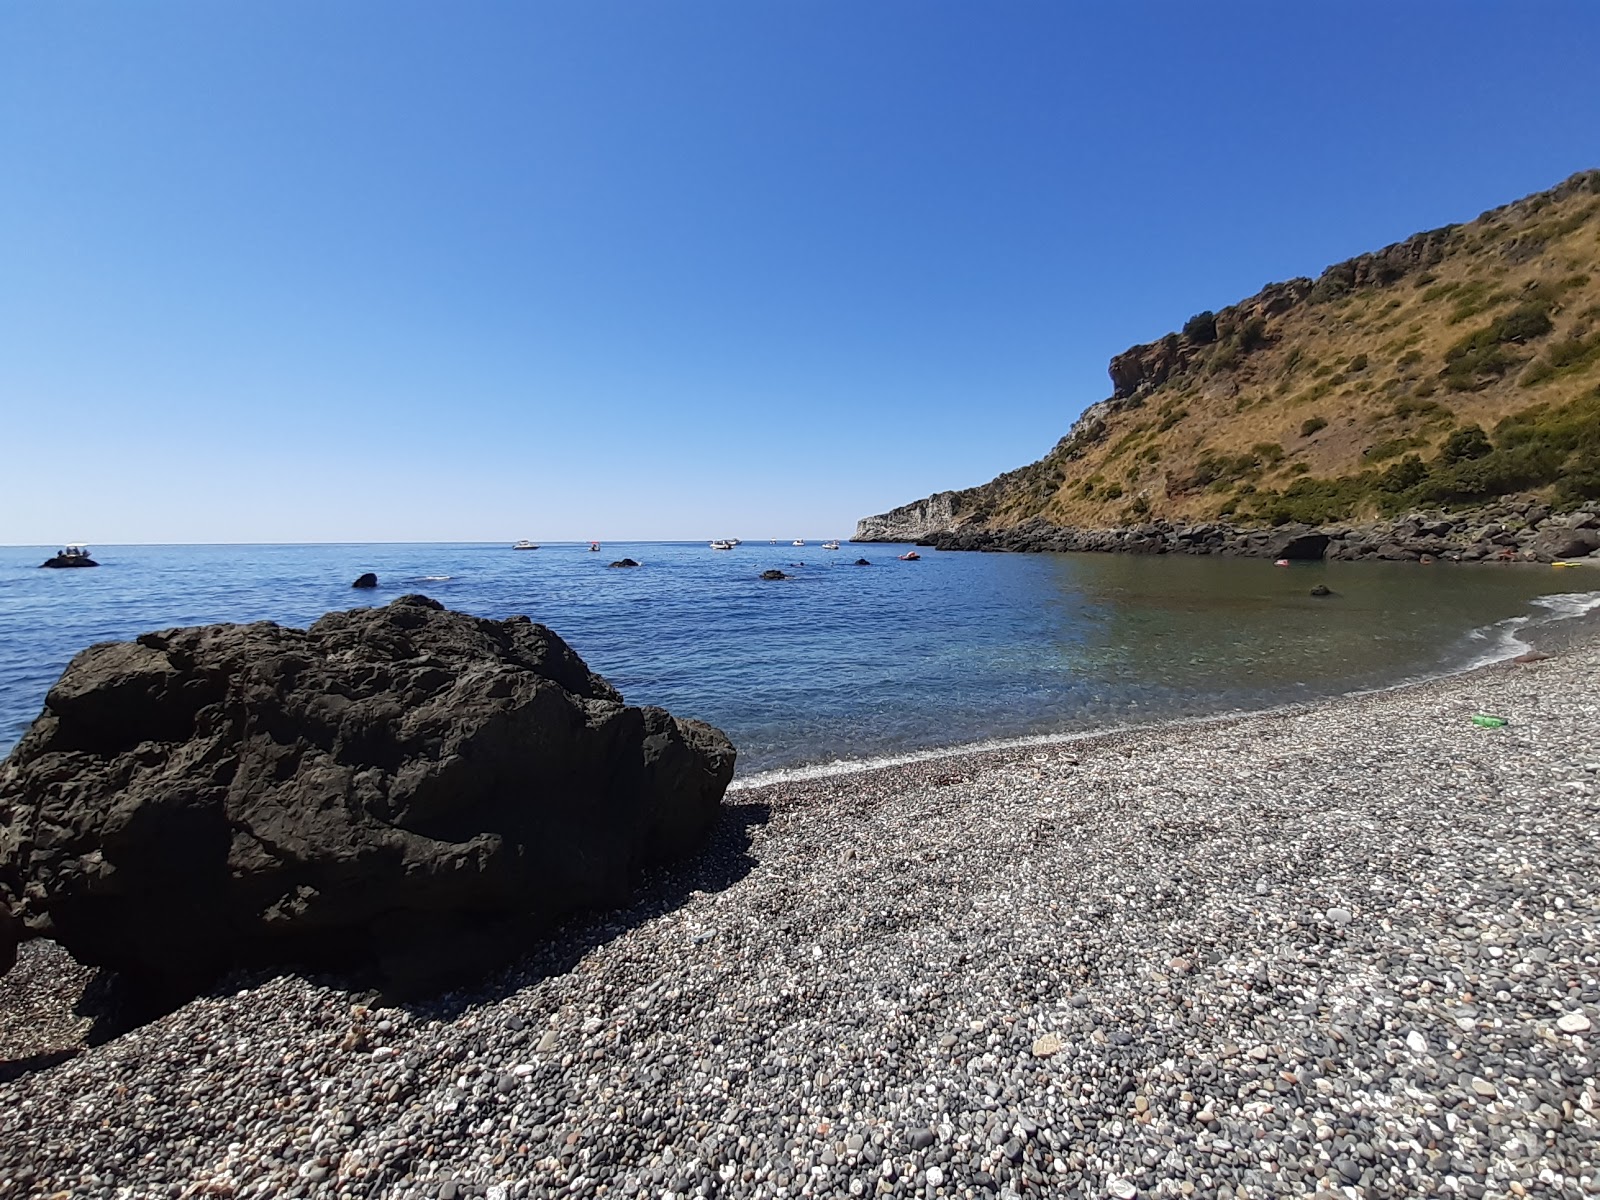 Baia del Carpino'in fotoğrafı gri ince çakıl taş yüzey ile